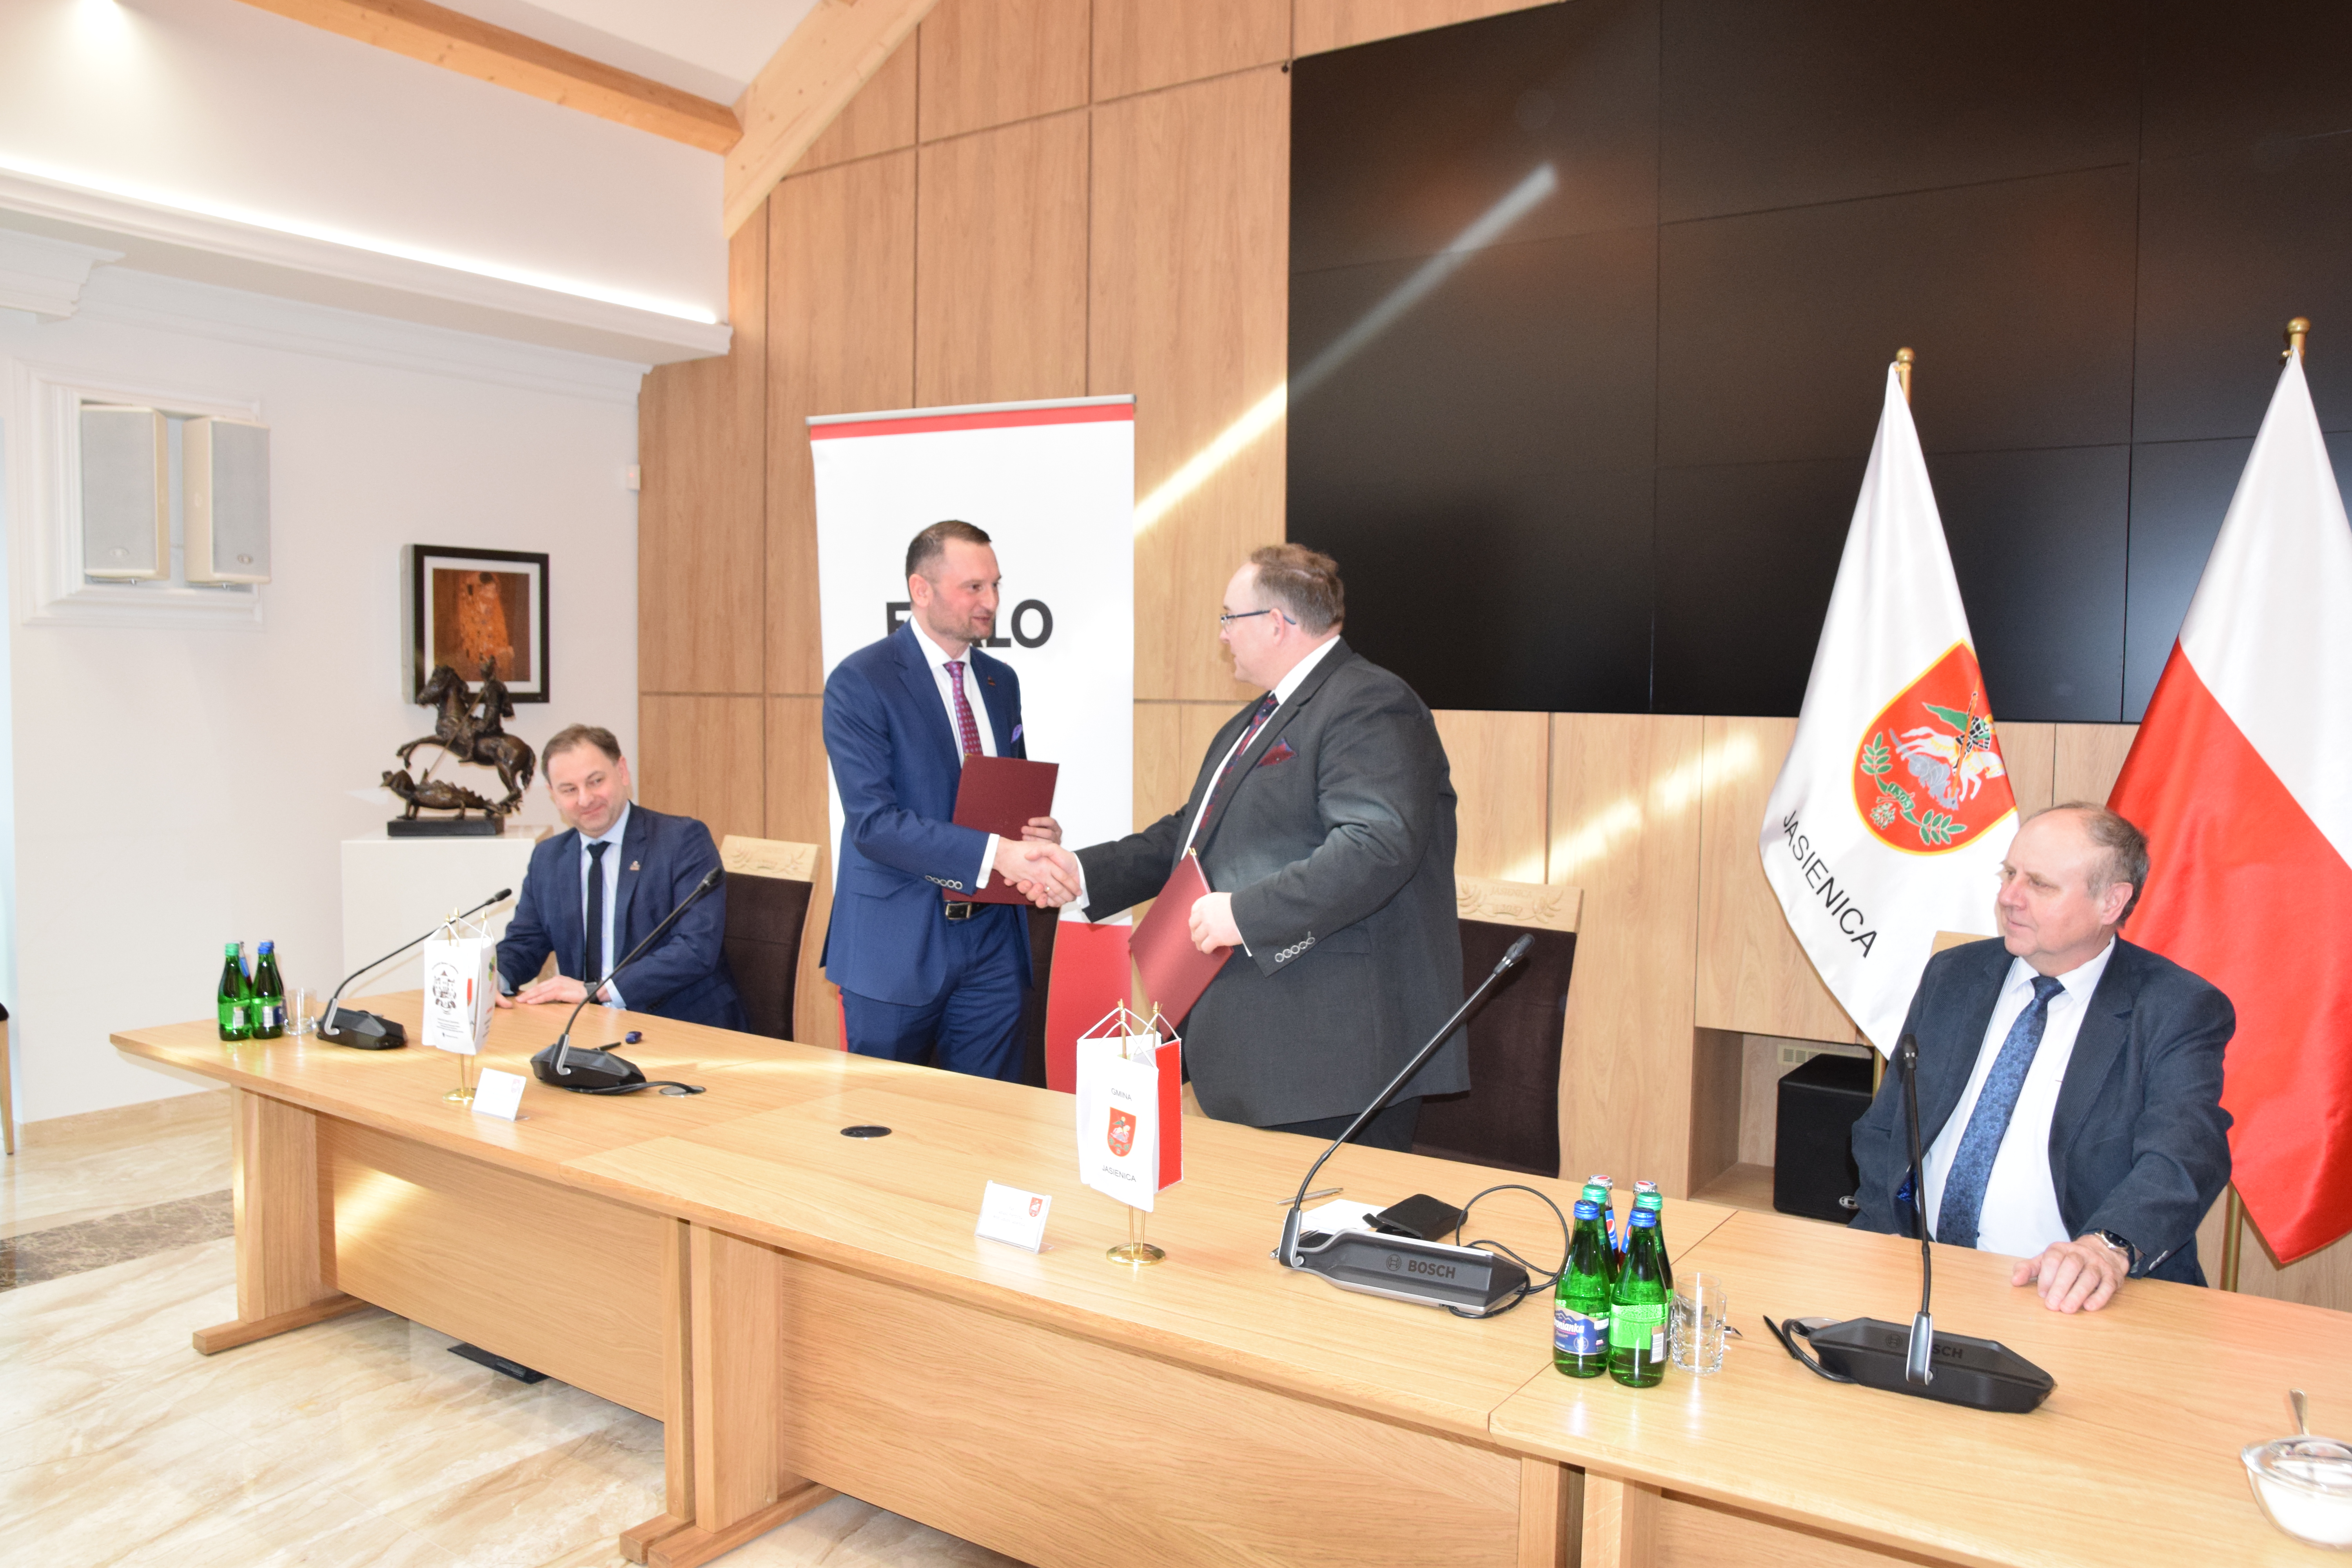 Podpisanie umowy przez Wójta Gminy Jasienica Janusza Pierzynę oraz dyrektora departamentu sprzedaży Exalo Drilling S.A Markiem Pyrek